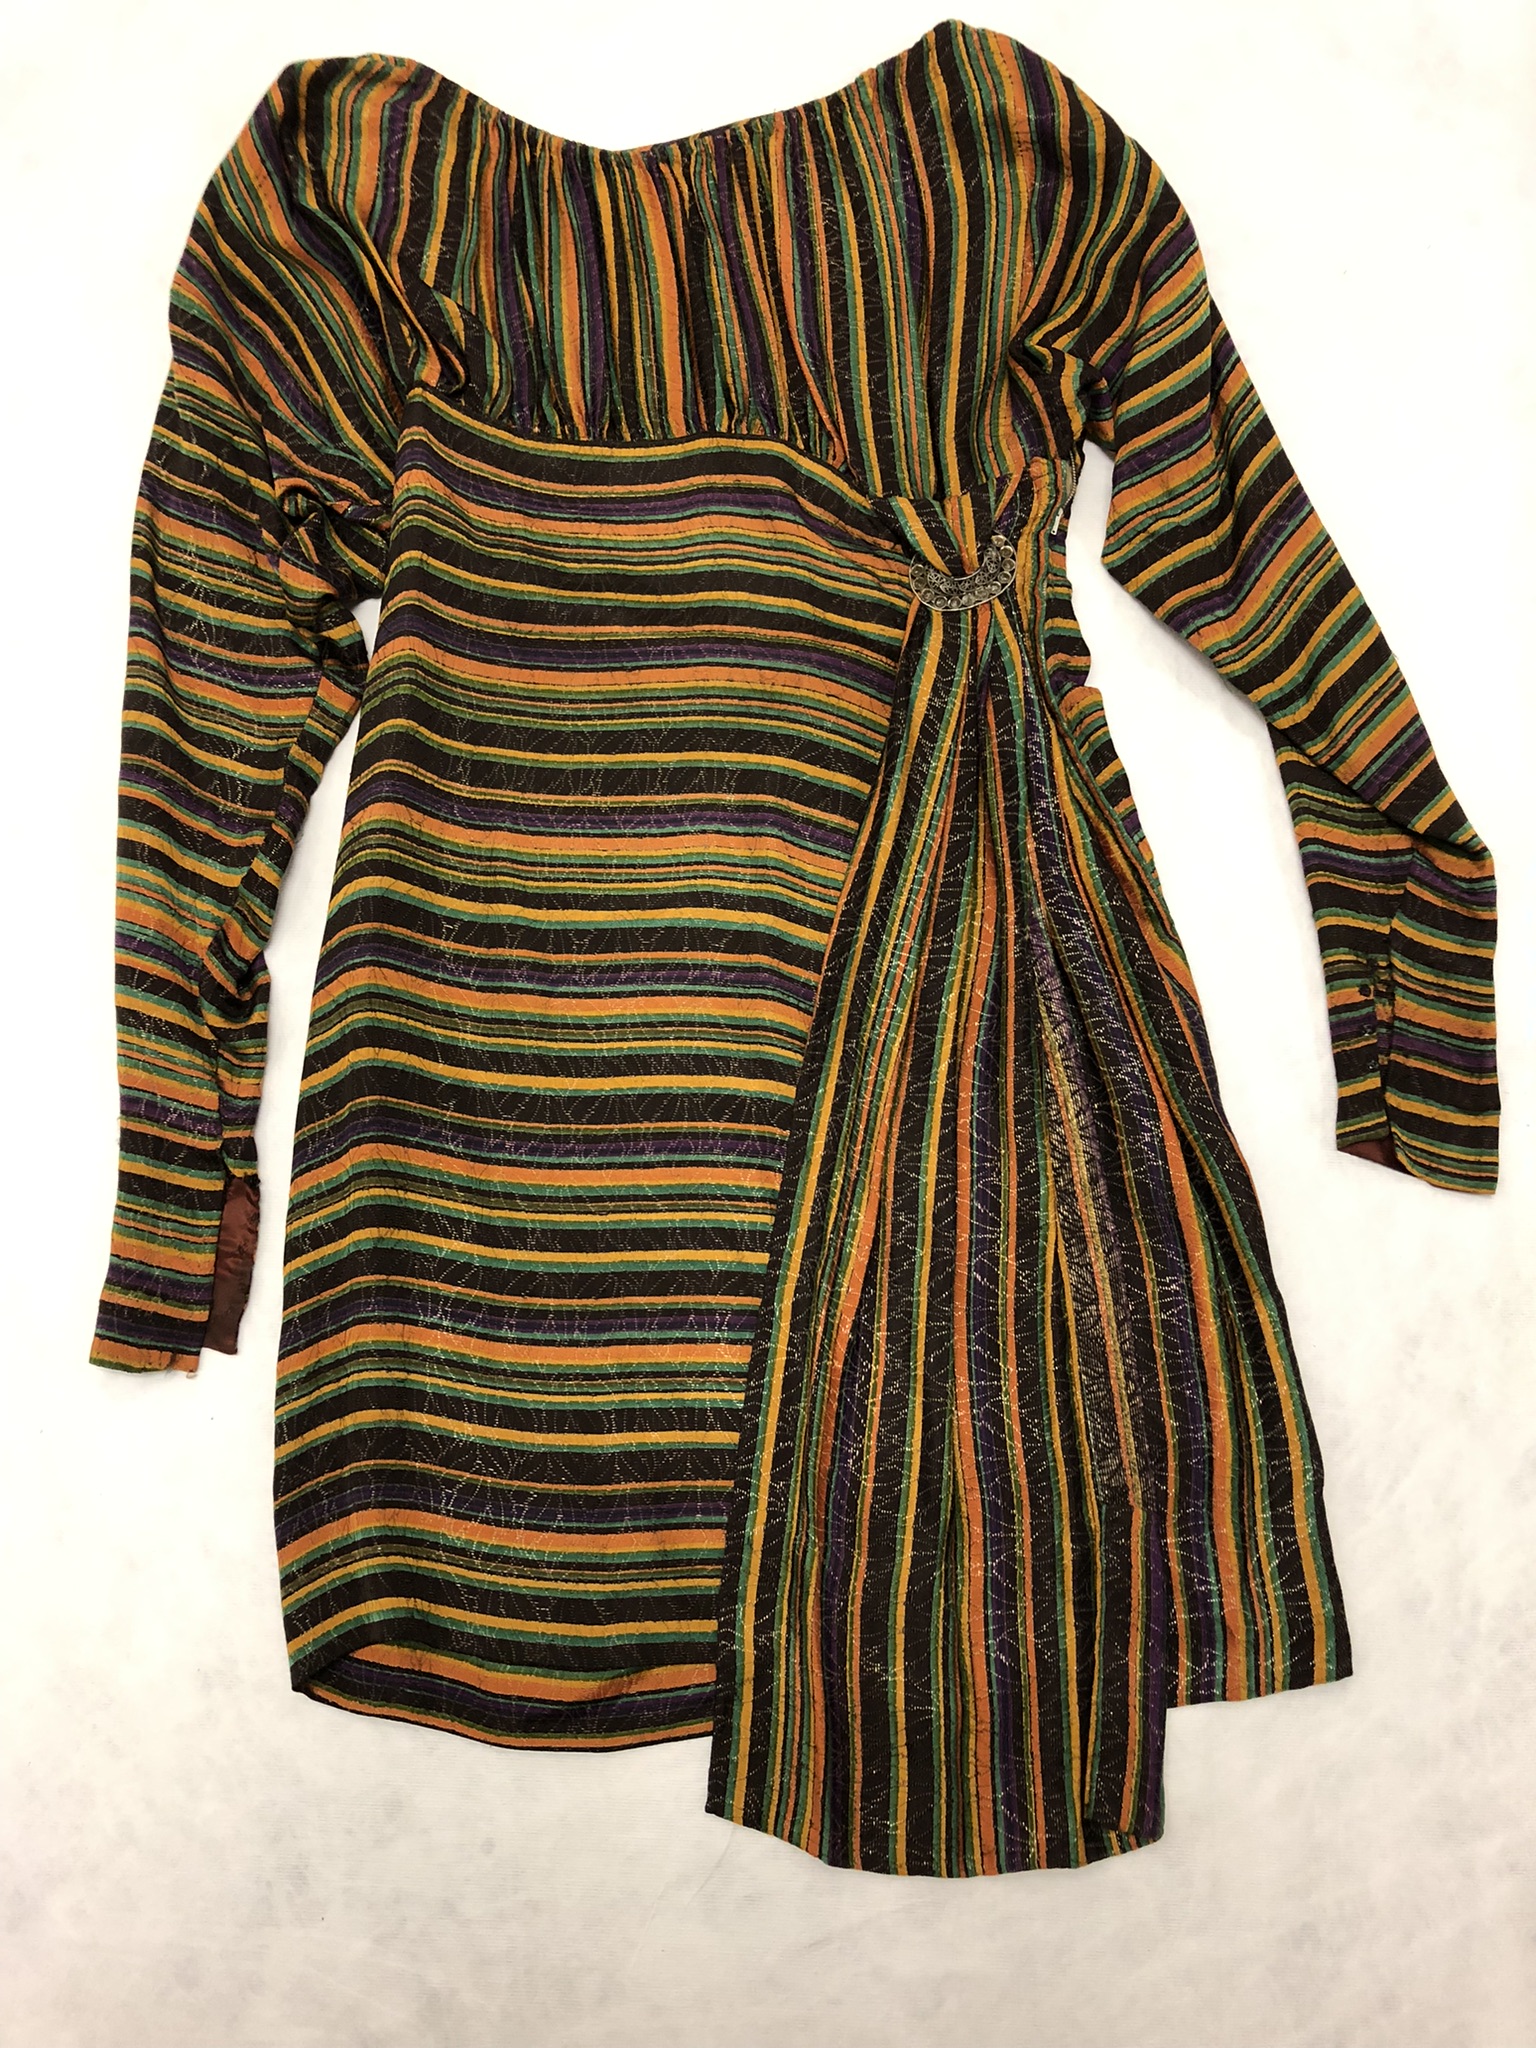 Striped brocade, slim three-quarter-length dress.